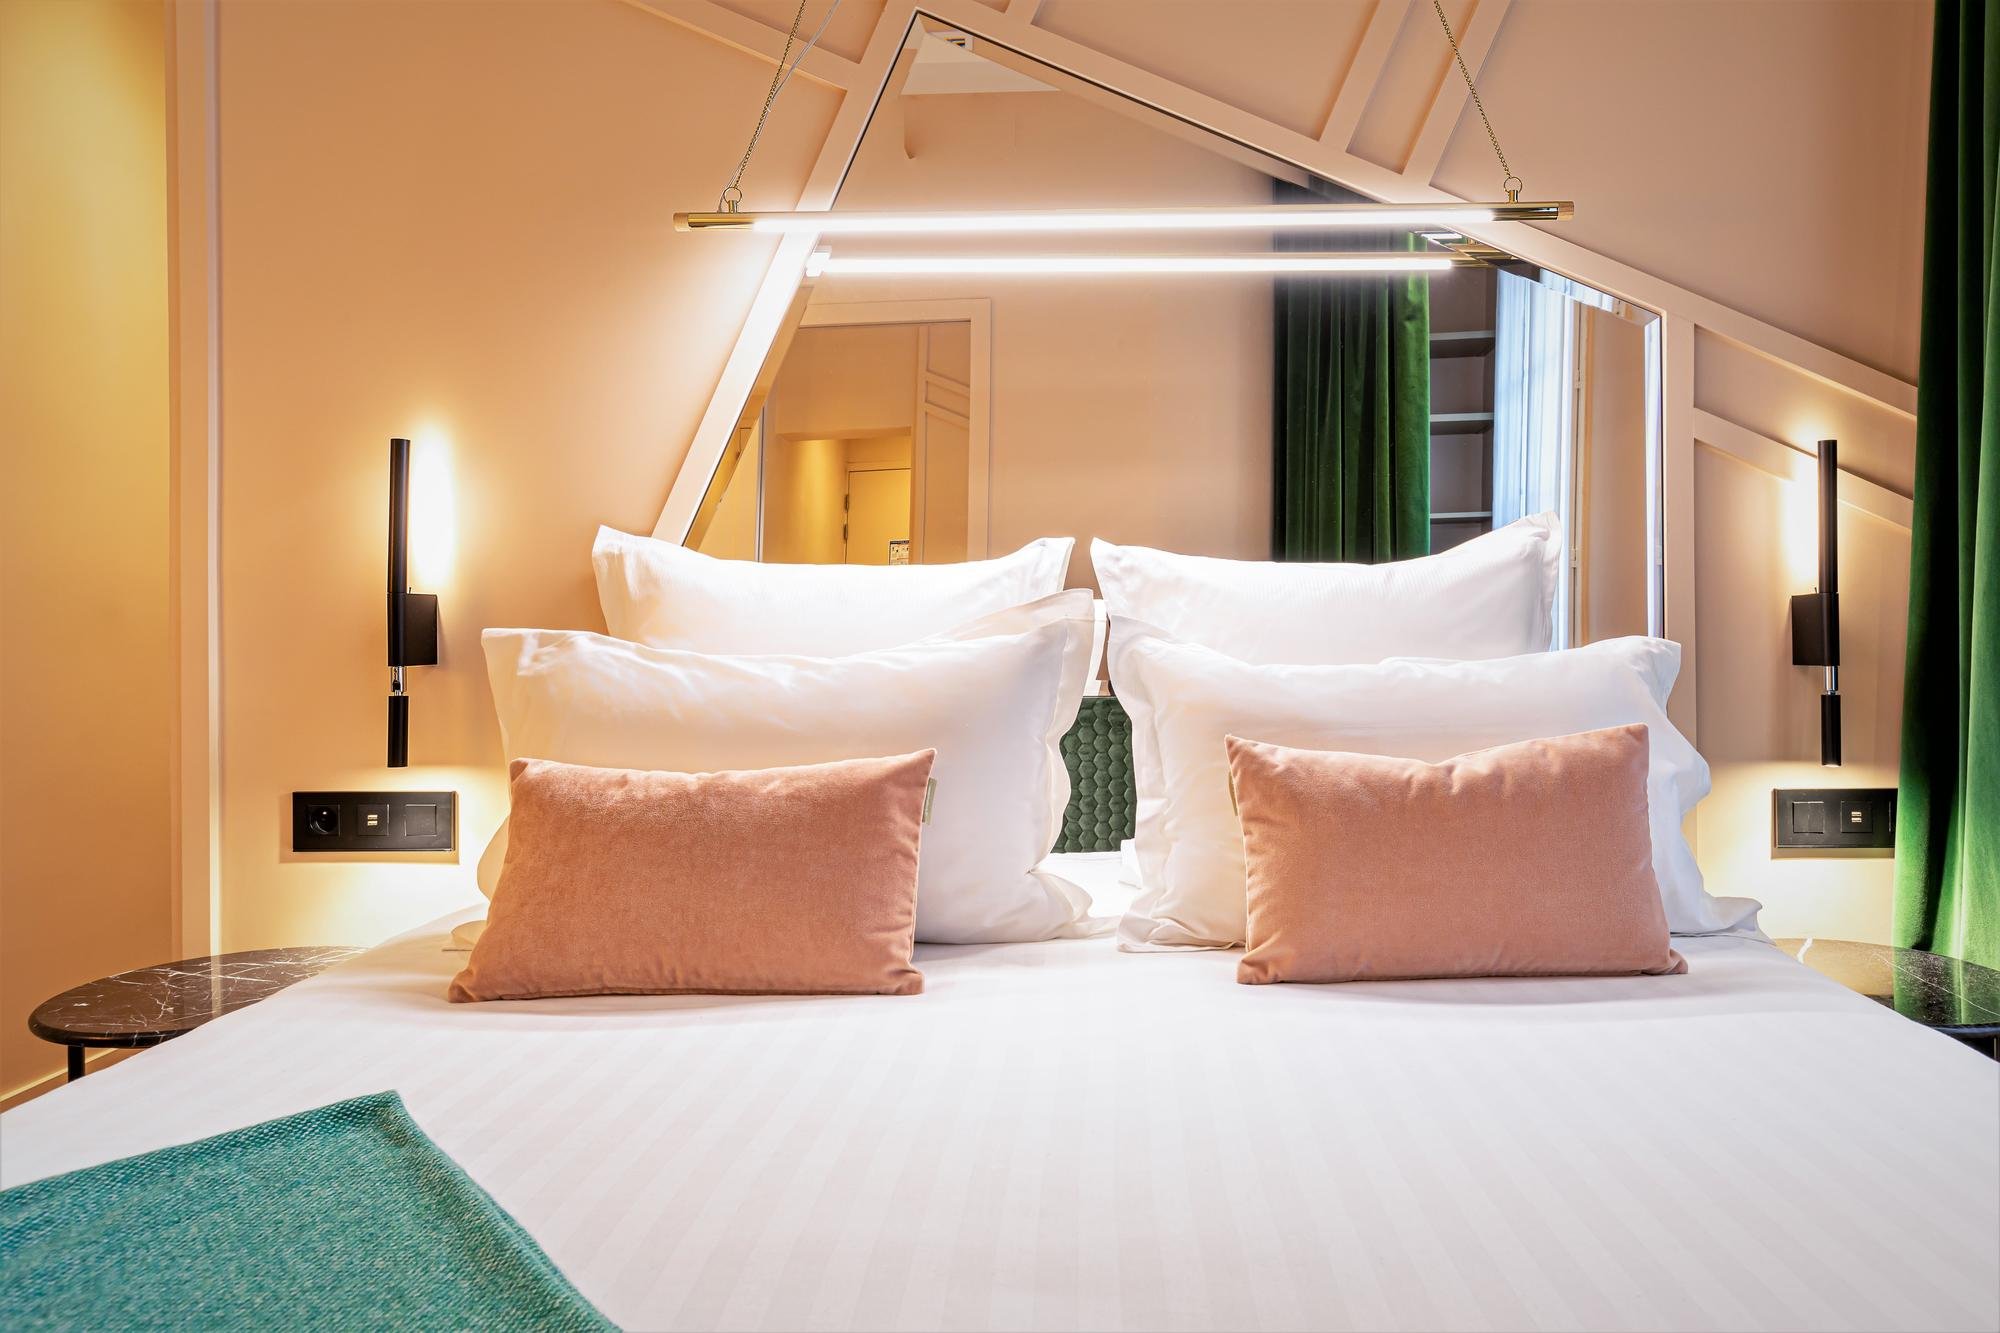 Hôtel Veryste - Verymini Room - Bed